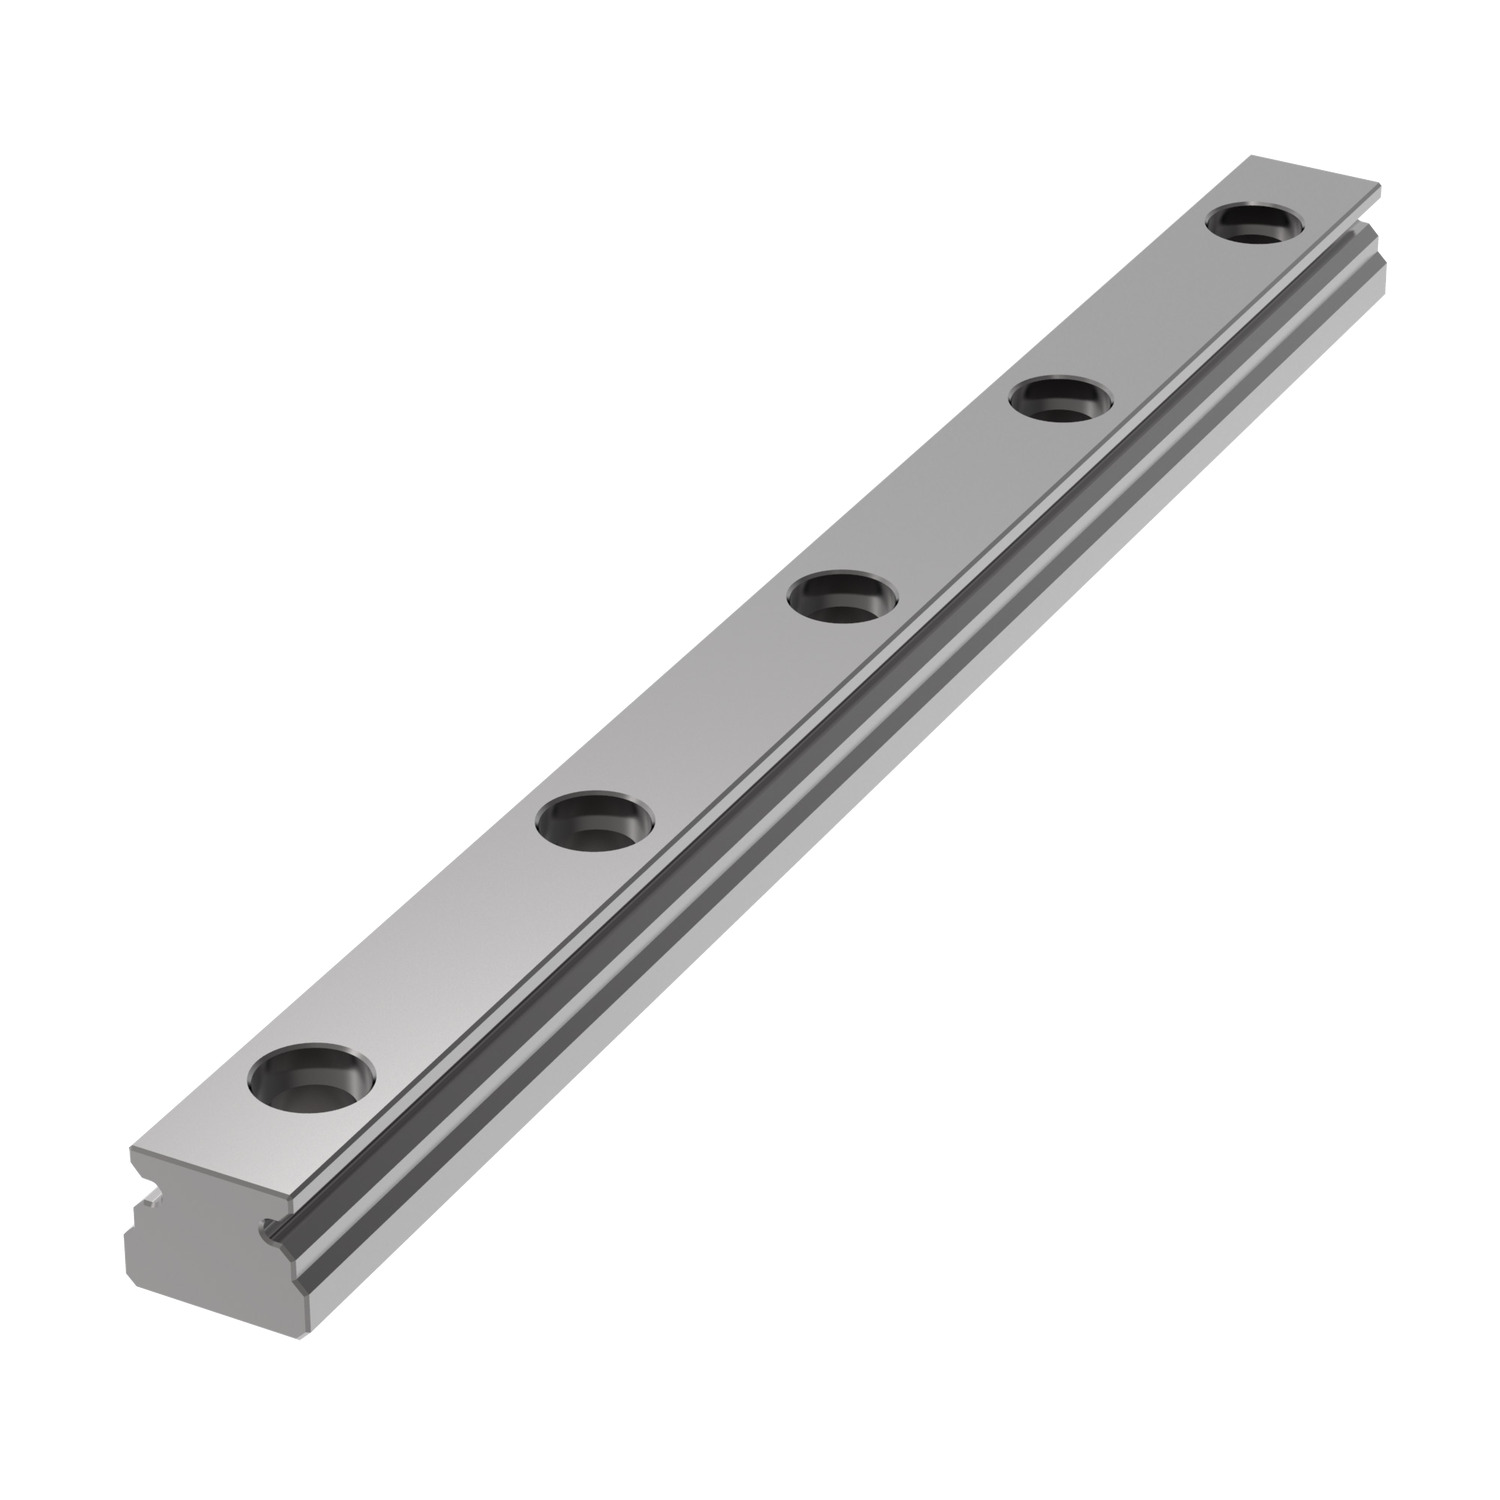 Product L1010.05, 5mm Miniature Linear Rail standard width / 